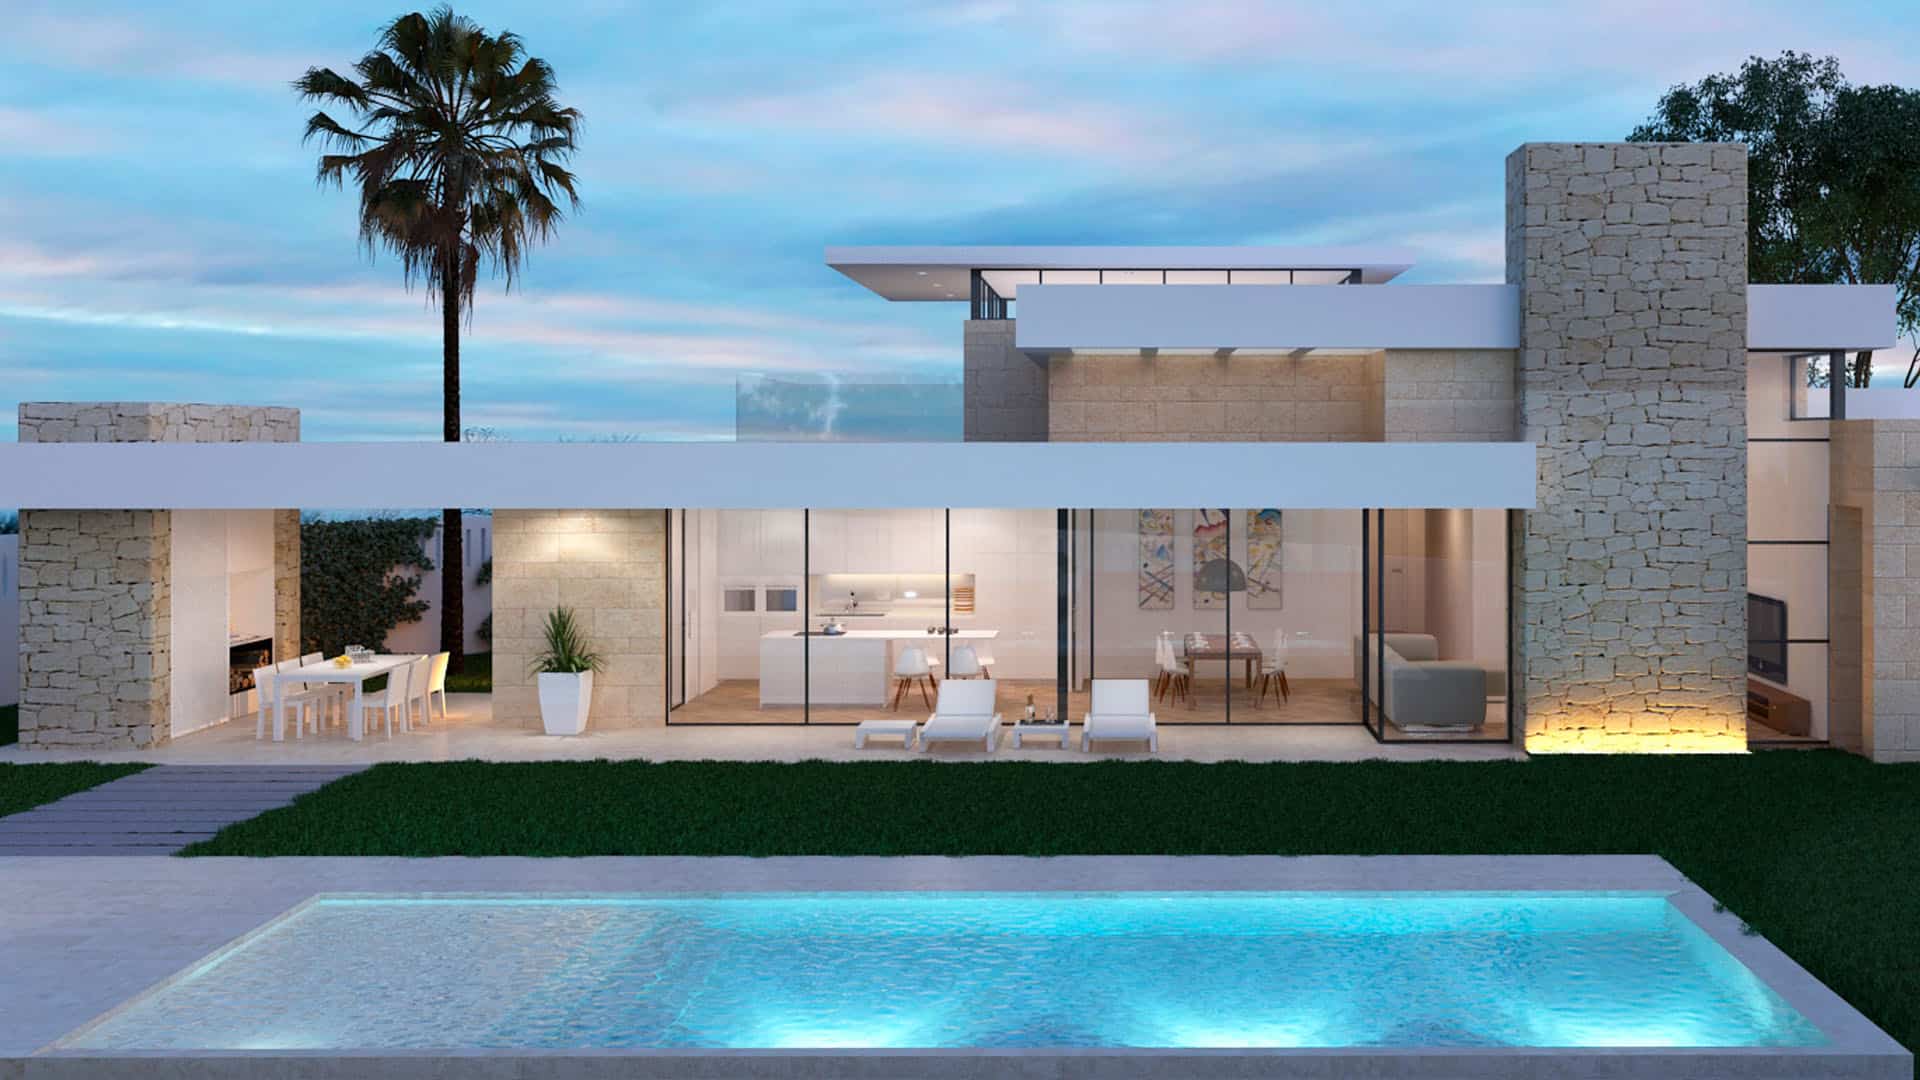 Villa de lujo en javea con piscina arquitectura de diseño moderna estilo mediterraneo